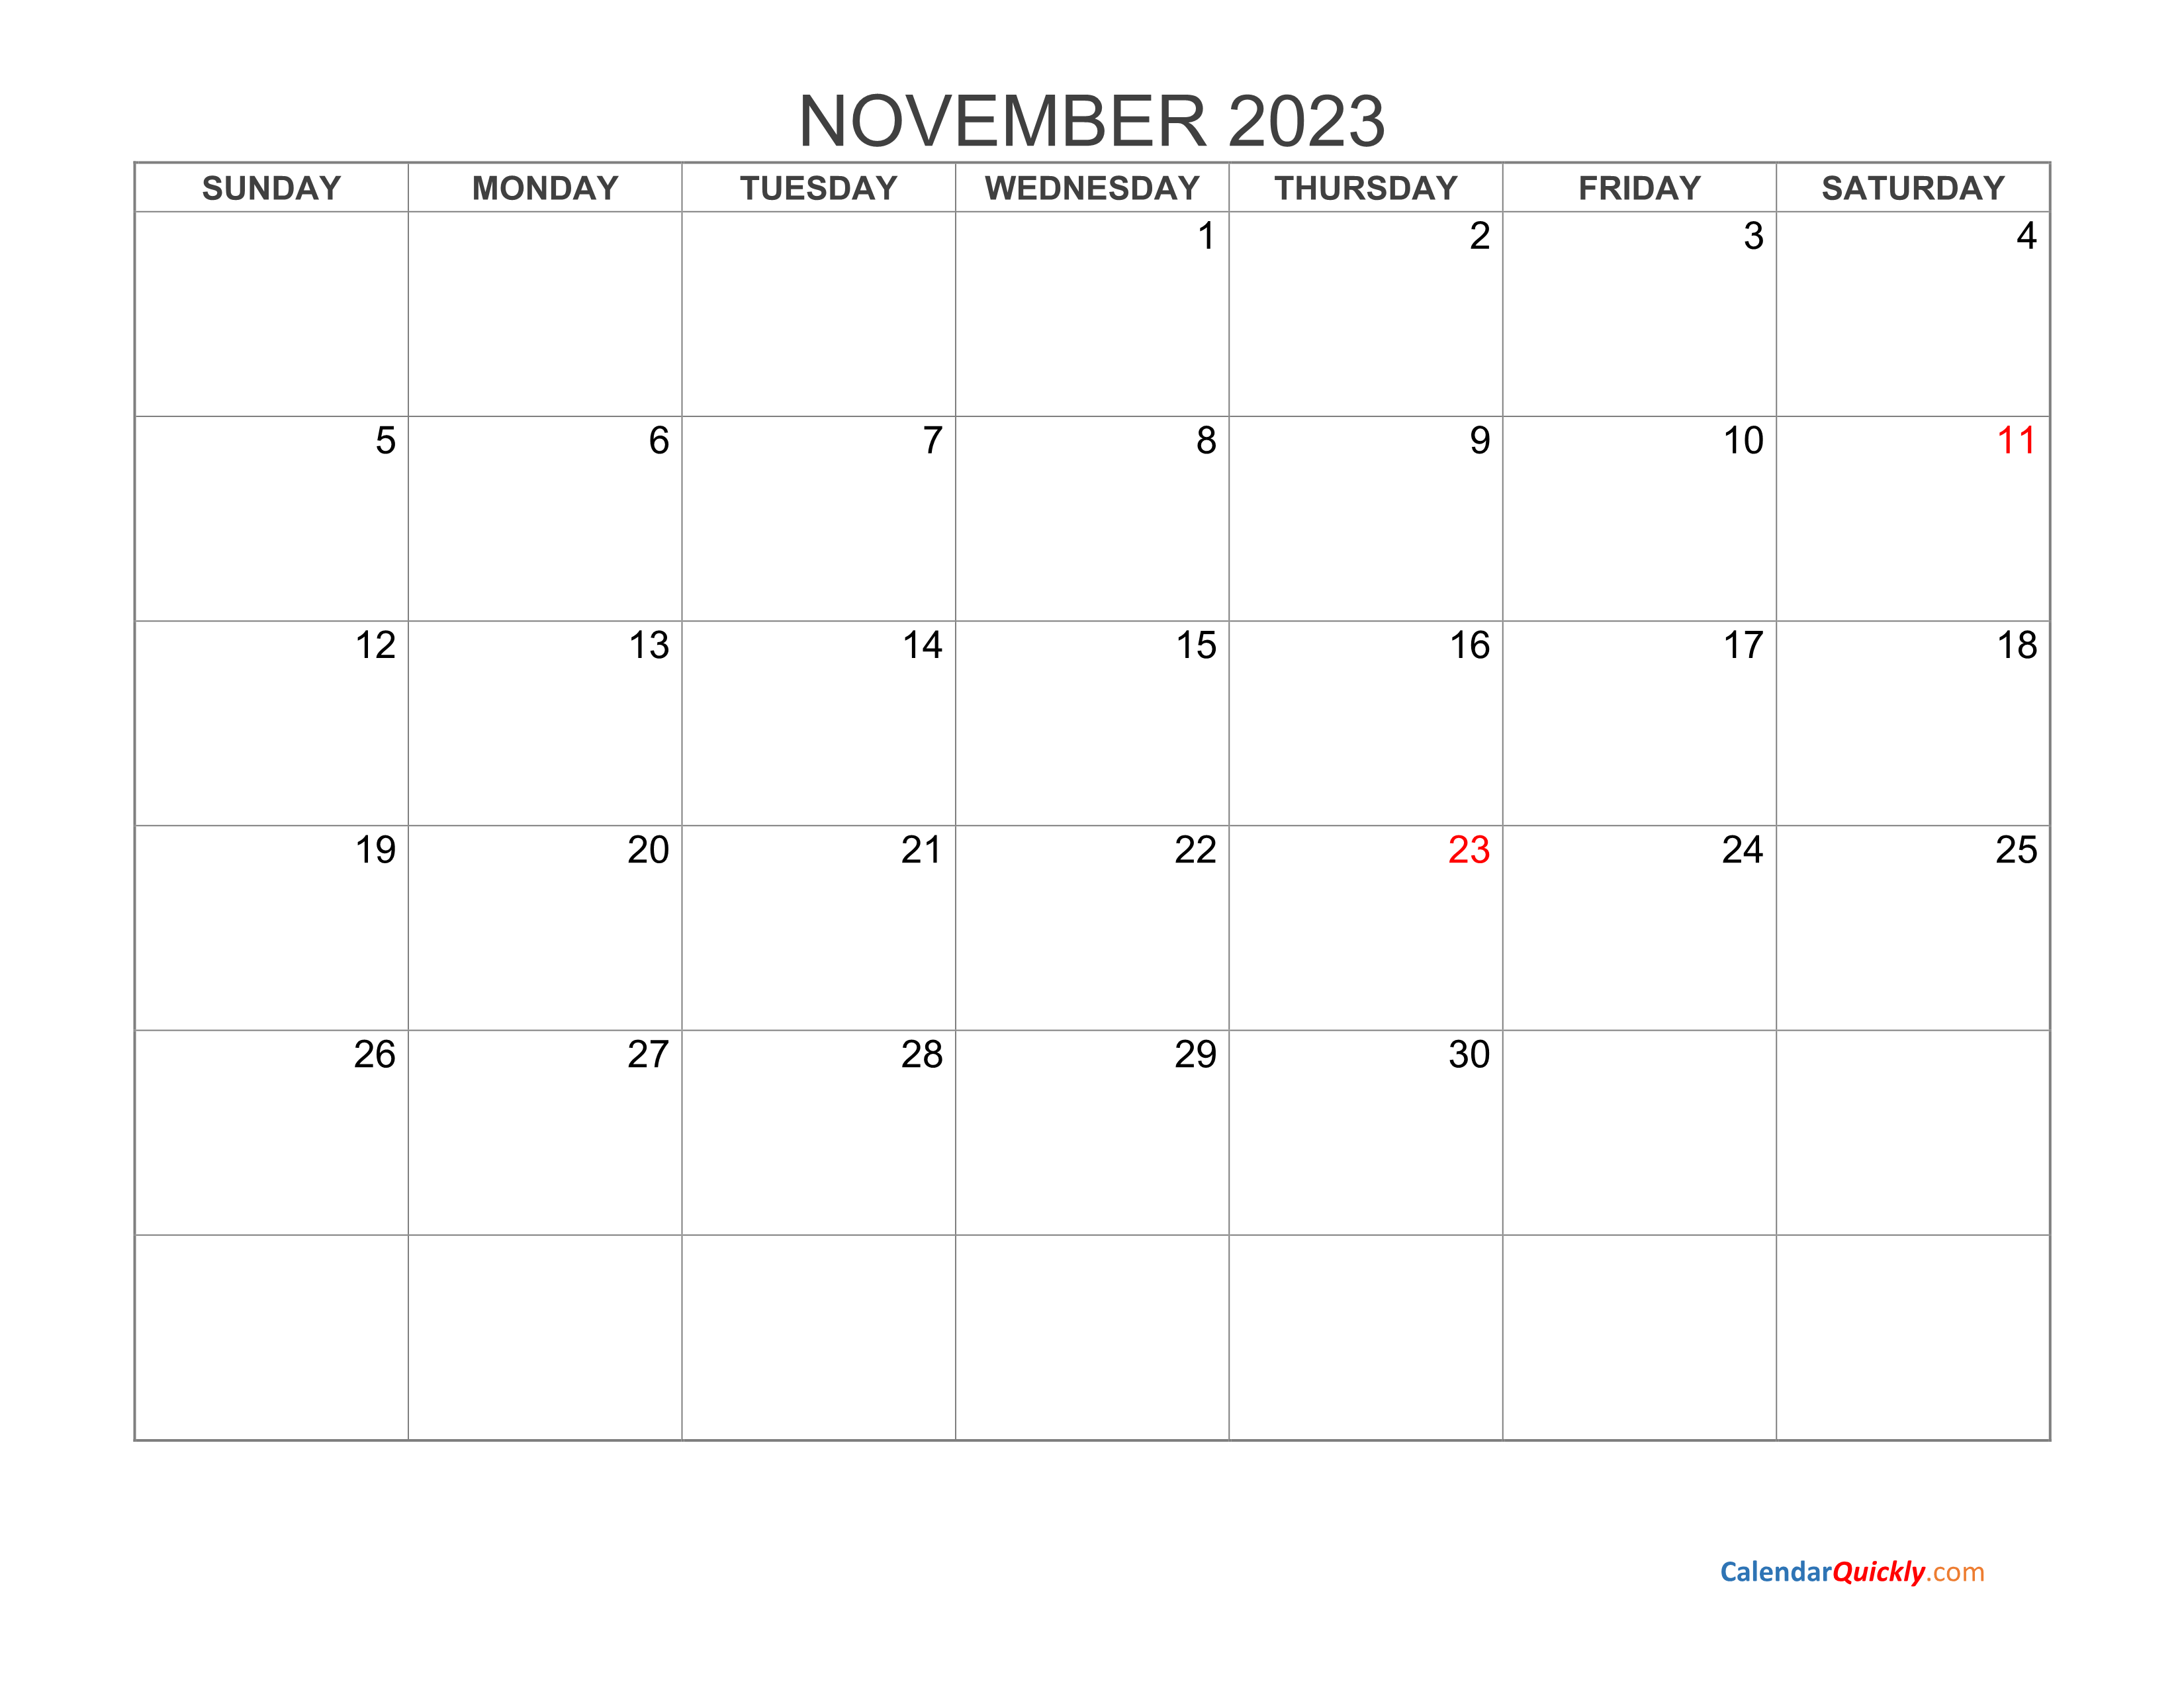 November 2023 Blank Calendar Calendar Quickly